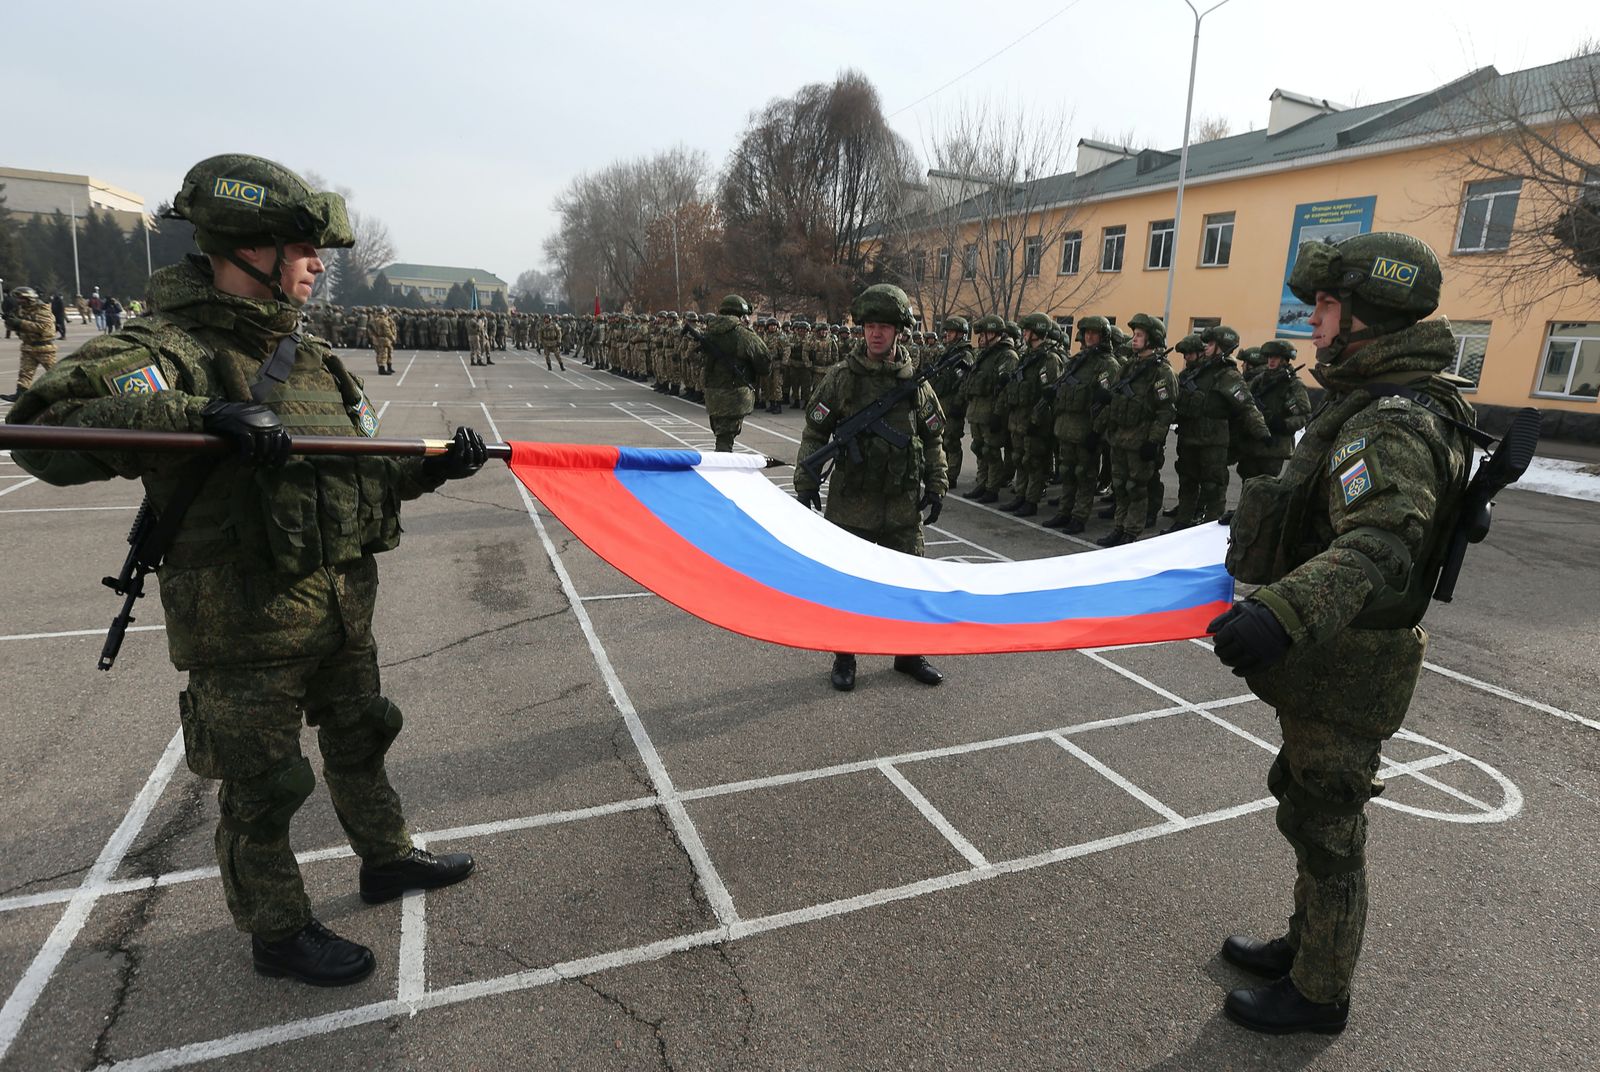 جنود روس يطوون العلم الوطني خلال مراسم بدء انسحاب قوات حفظ السلام التابعة لمنظمة معاهدة الأمن الجماعي (CSTO) من كازاخستان، في مدينة ألما آتا، 13 يناير 2022 - REUTERS